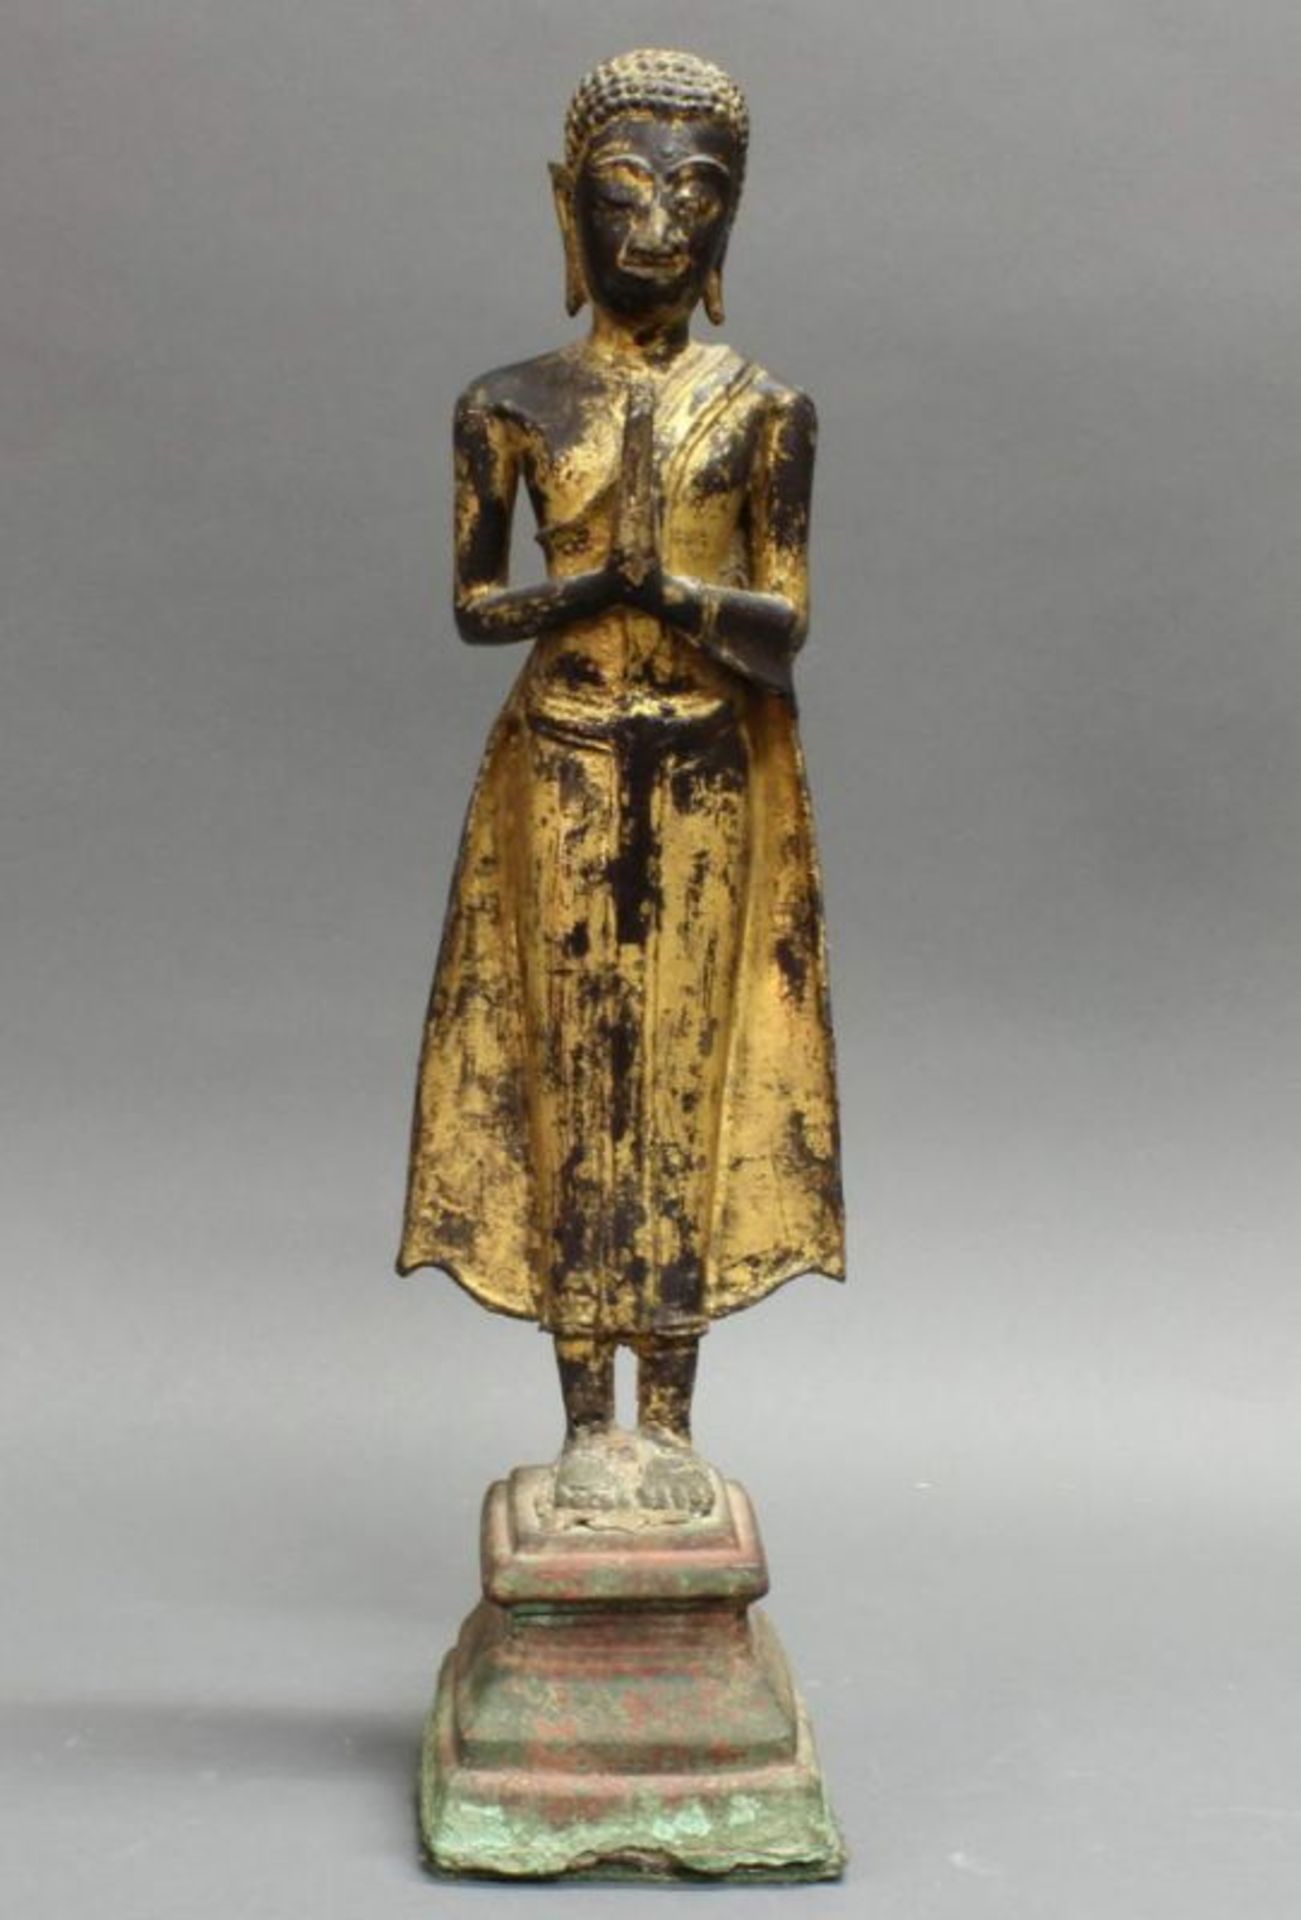 Skulptur, "Stehender Buddha", Thailand, 19. Jh., Bronze, vergoldet, 50 cm hoch, Fußknöchel mit